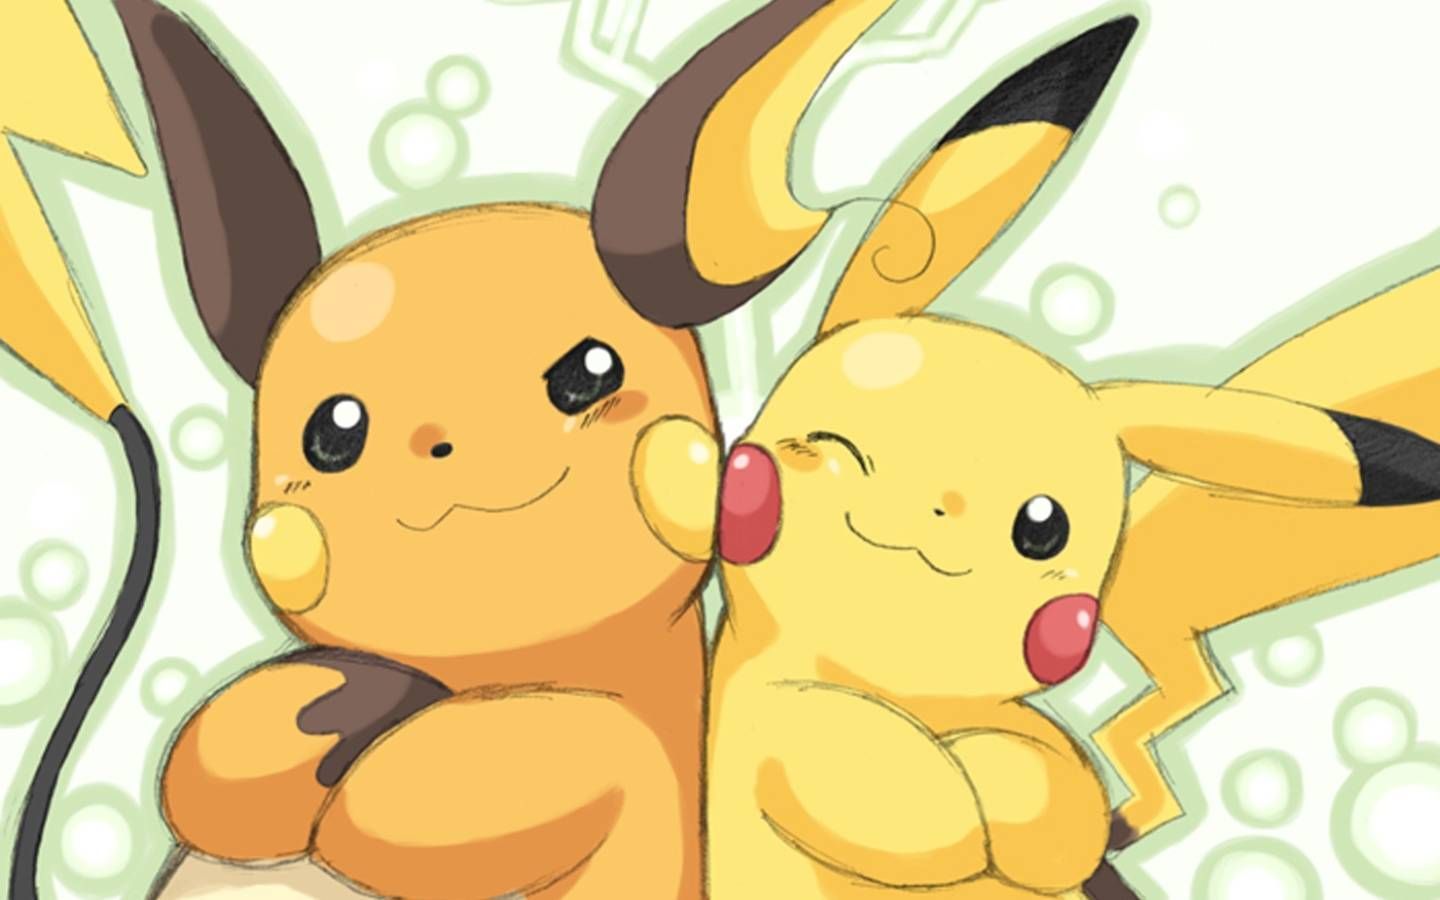 6816 - ¿Puedes relacionar estos Pokémon con su nombre?